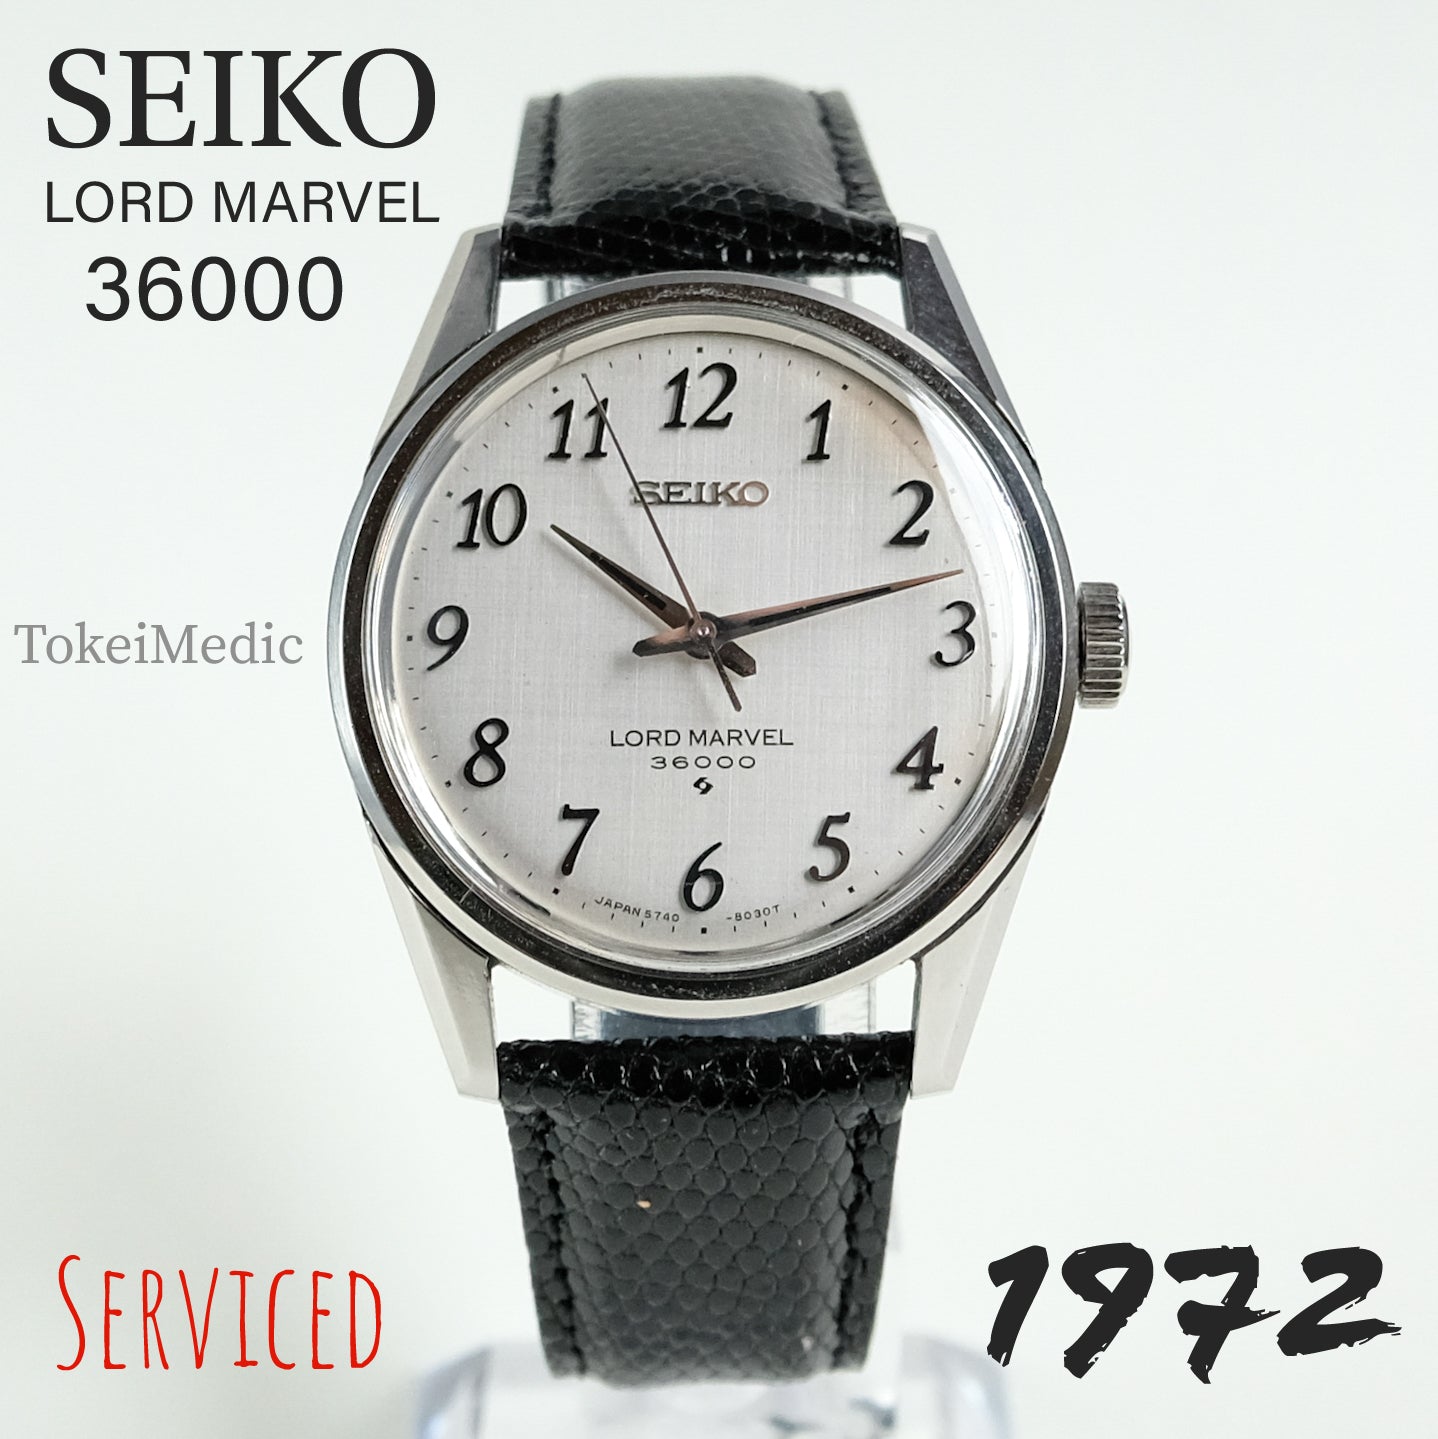 1972 Seiko Lord Marvel 36000 5740-8000 – TokeiMedic